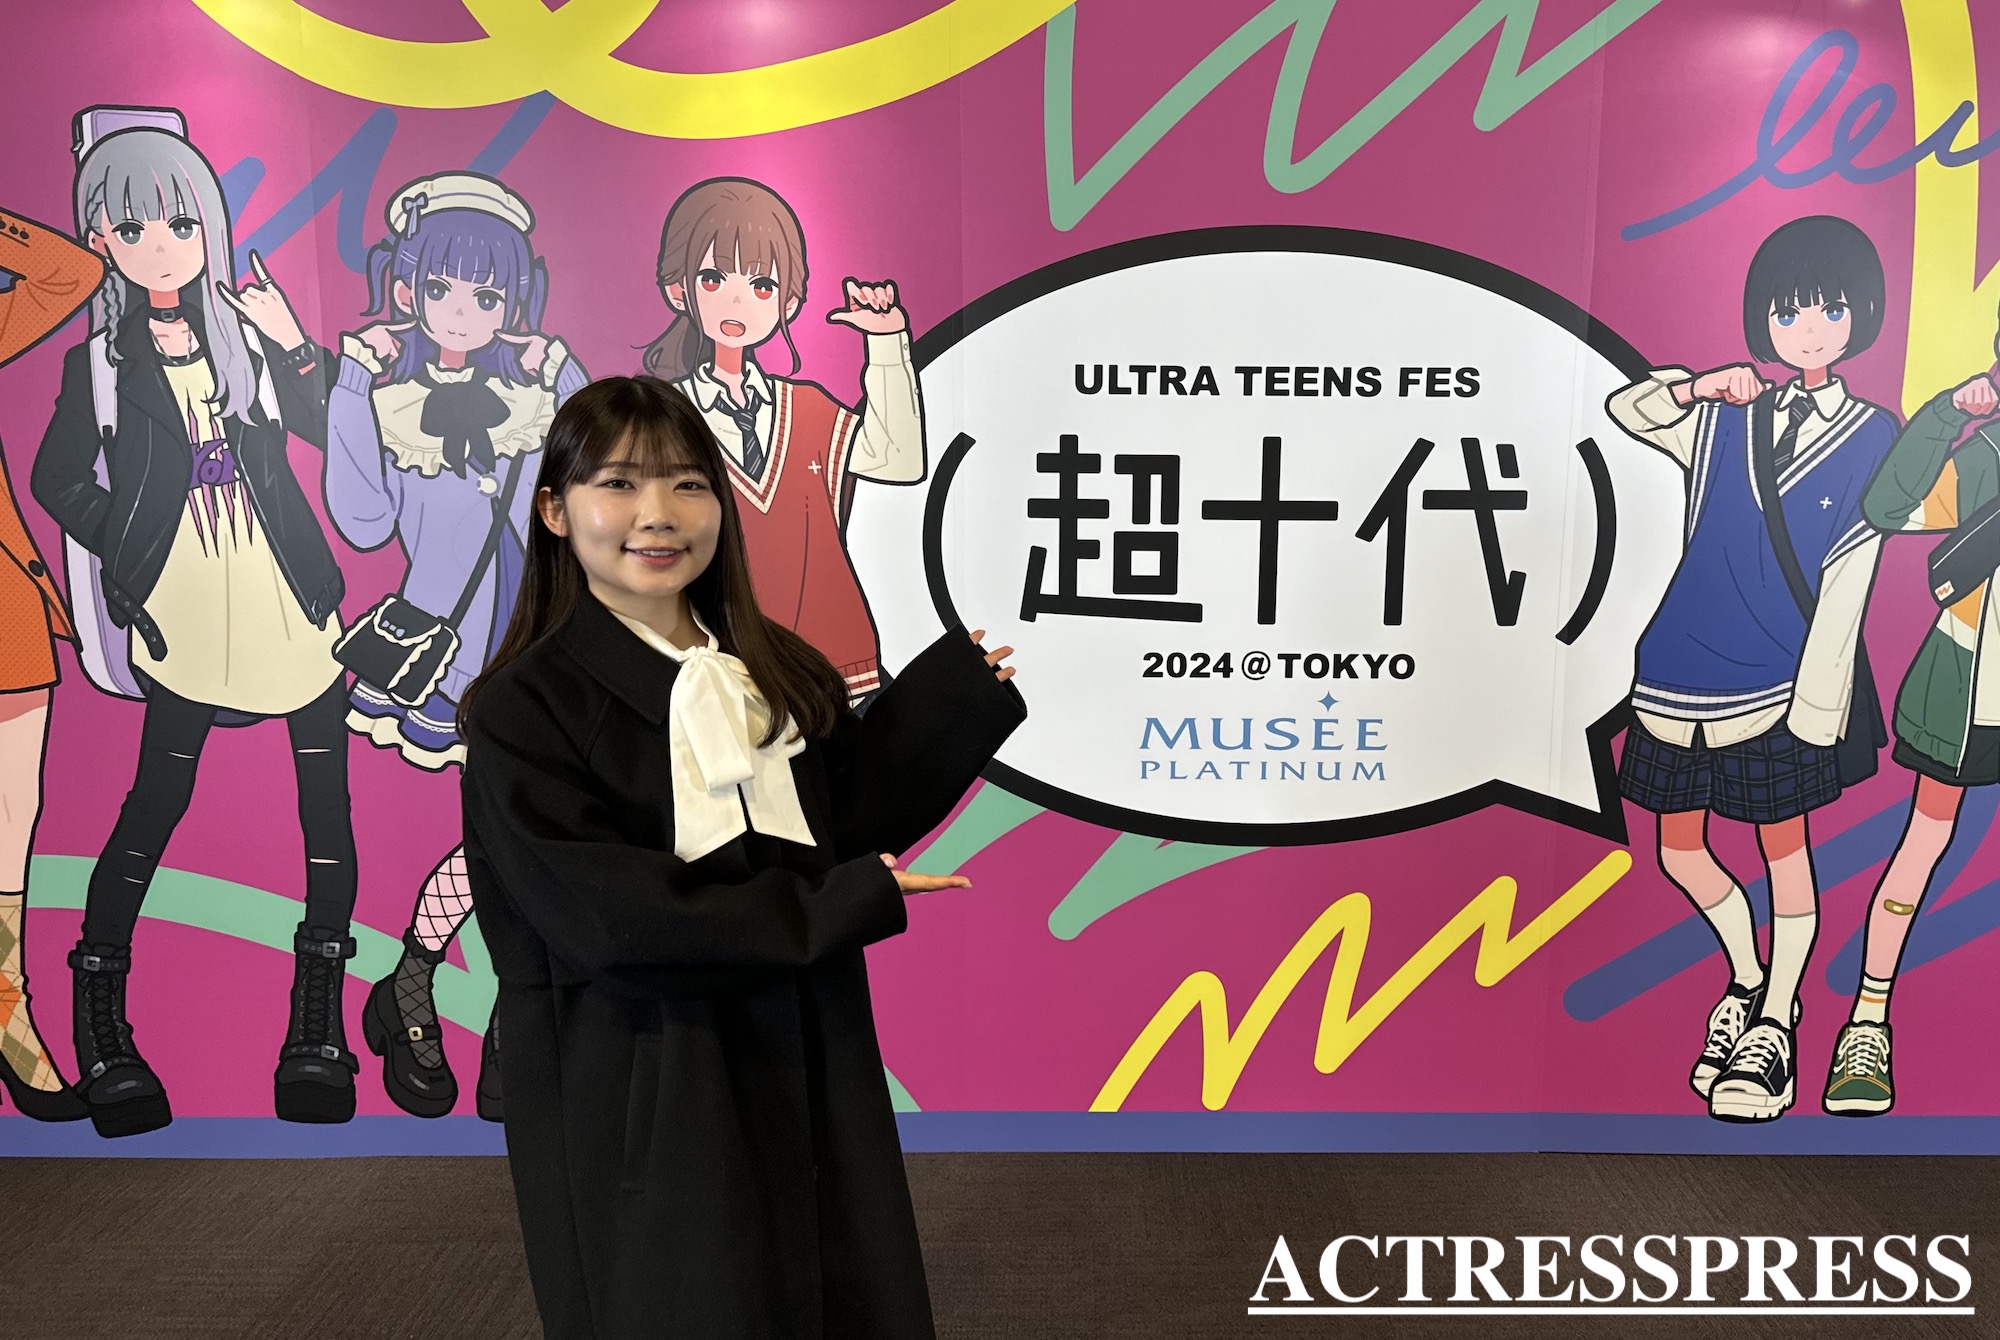 渡辺梨子（東京女子大学）ACTRESS PRESS REPORTER